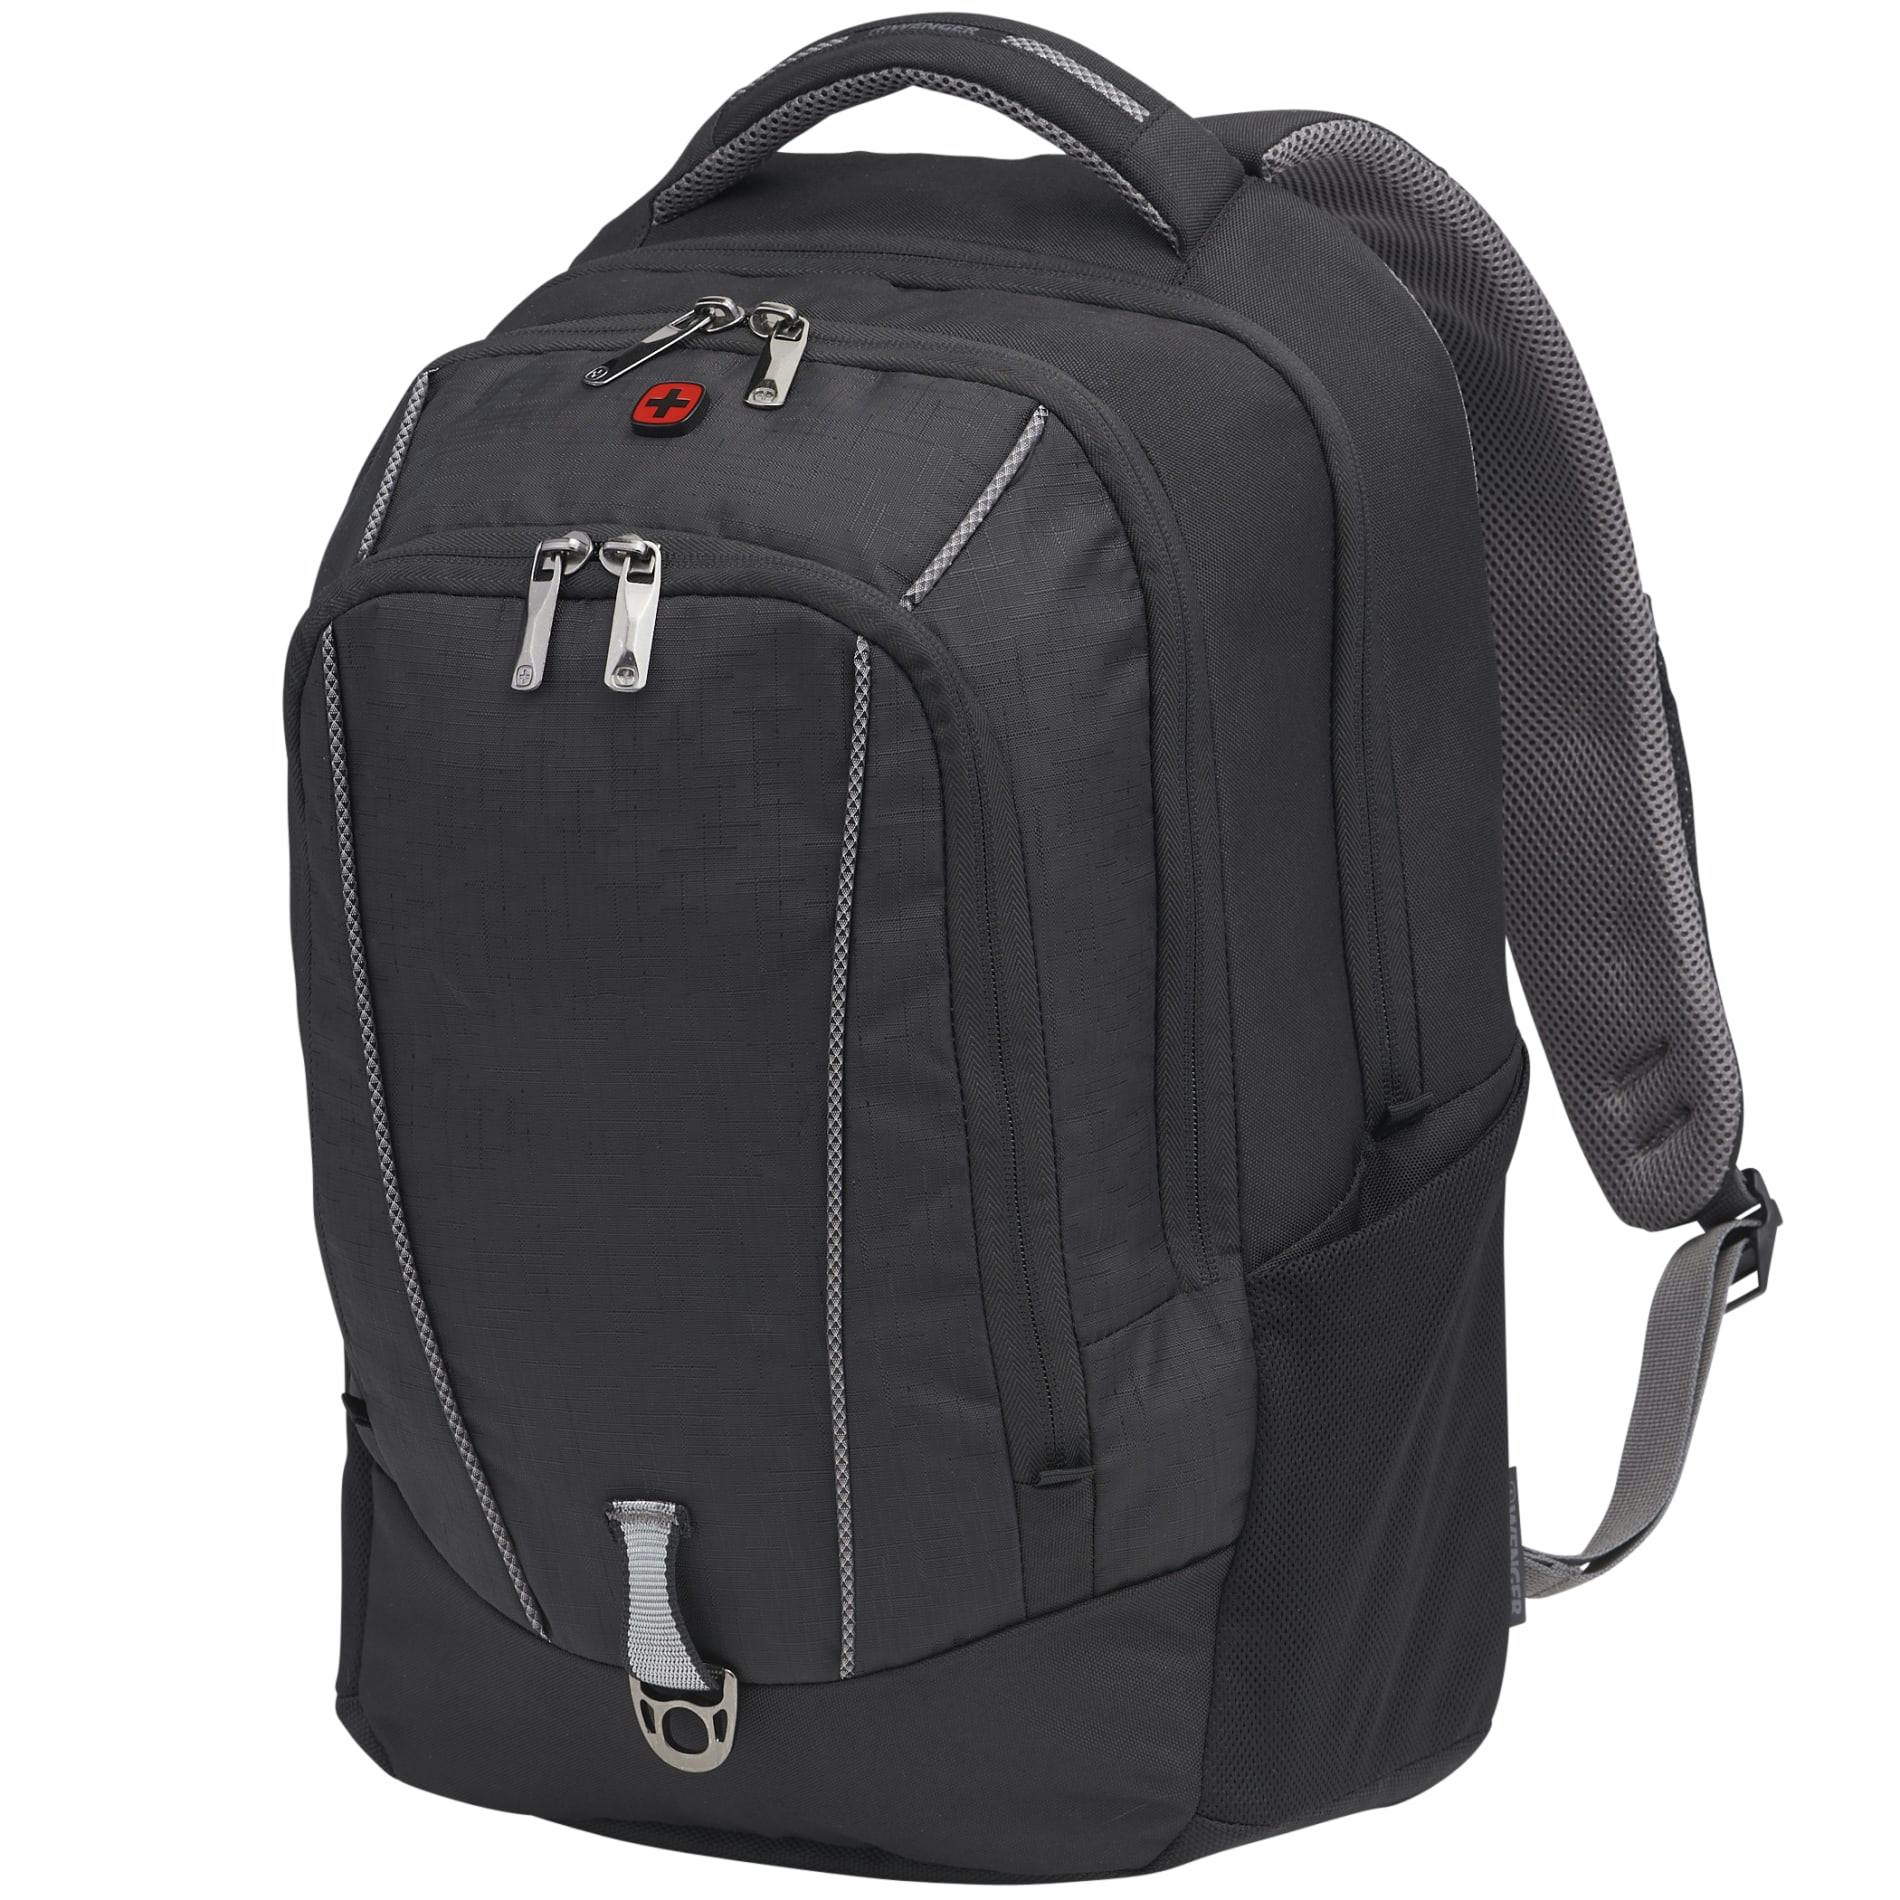 Wenger Pro II 17" Computer Backpack - additional Image 5